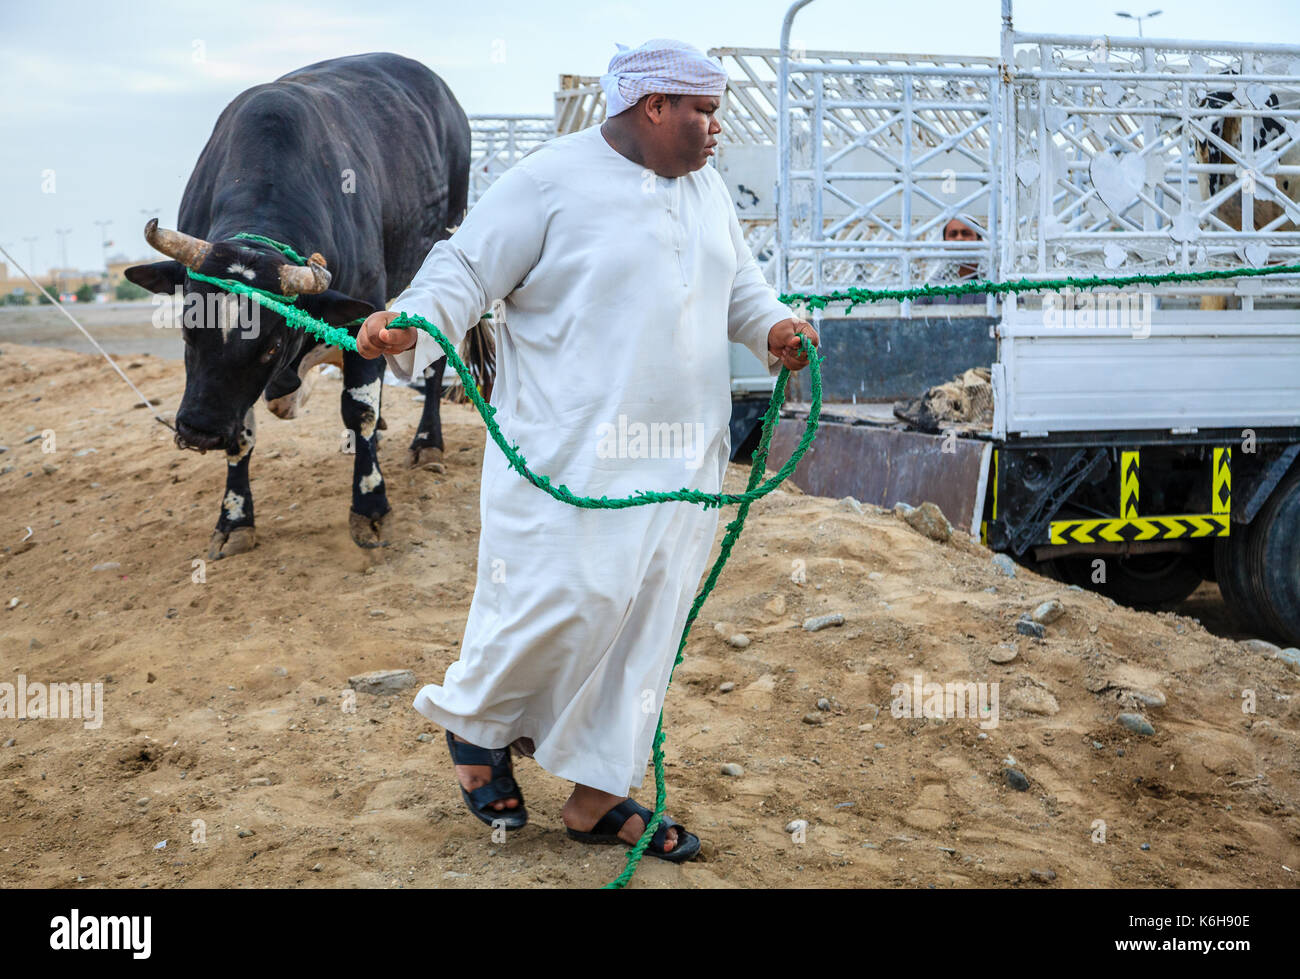 Fujairah, UAE, April 1, 2016: local people bring bulls for traditional bull fighting in Fujairah, UAE Stock Photo